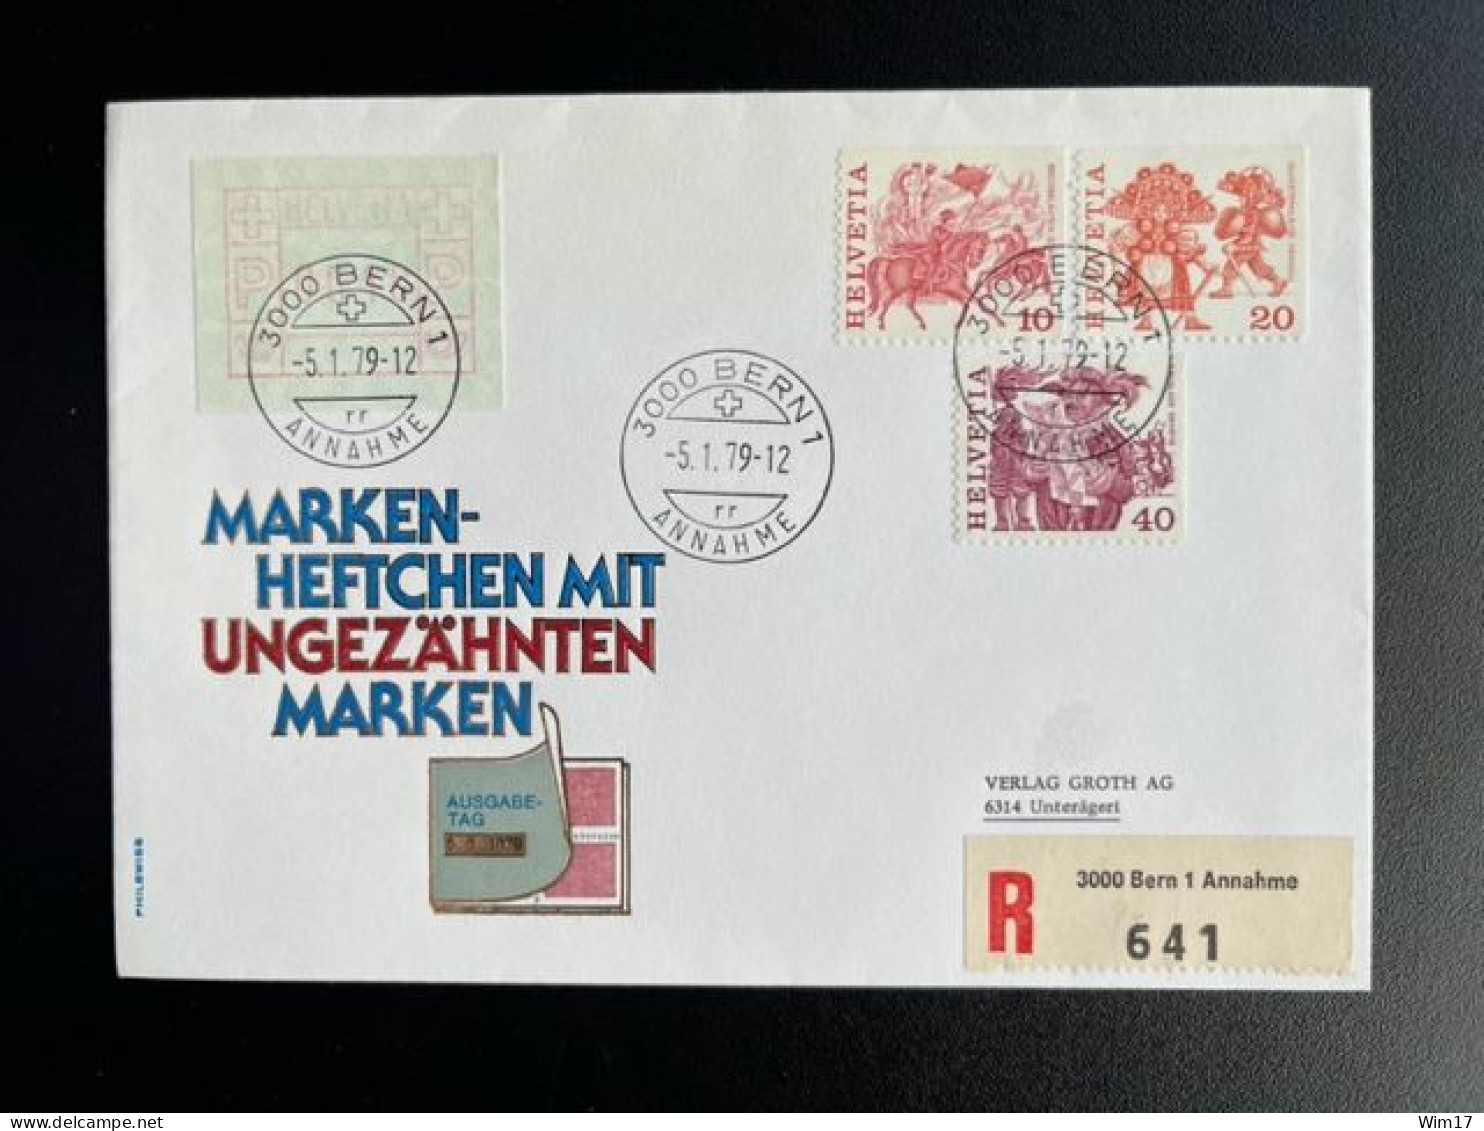 SWITZERLAND 1979 REGISTERED FDC BERN TO UNTERAGERI 05-01-1979 ZWITSERLAND SUISSE SCHWEIZ EINSCHREIBEN - FDC